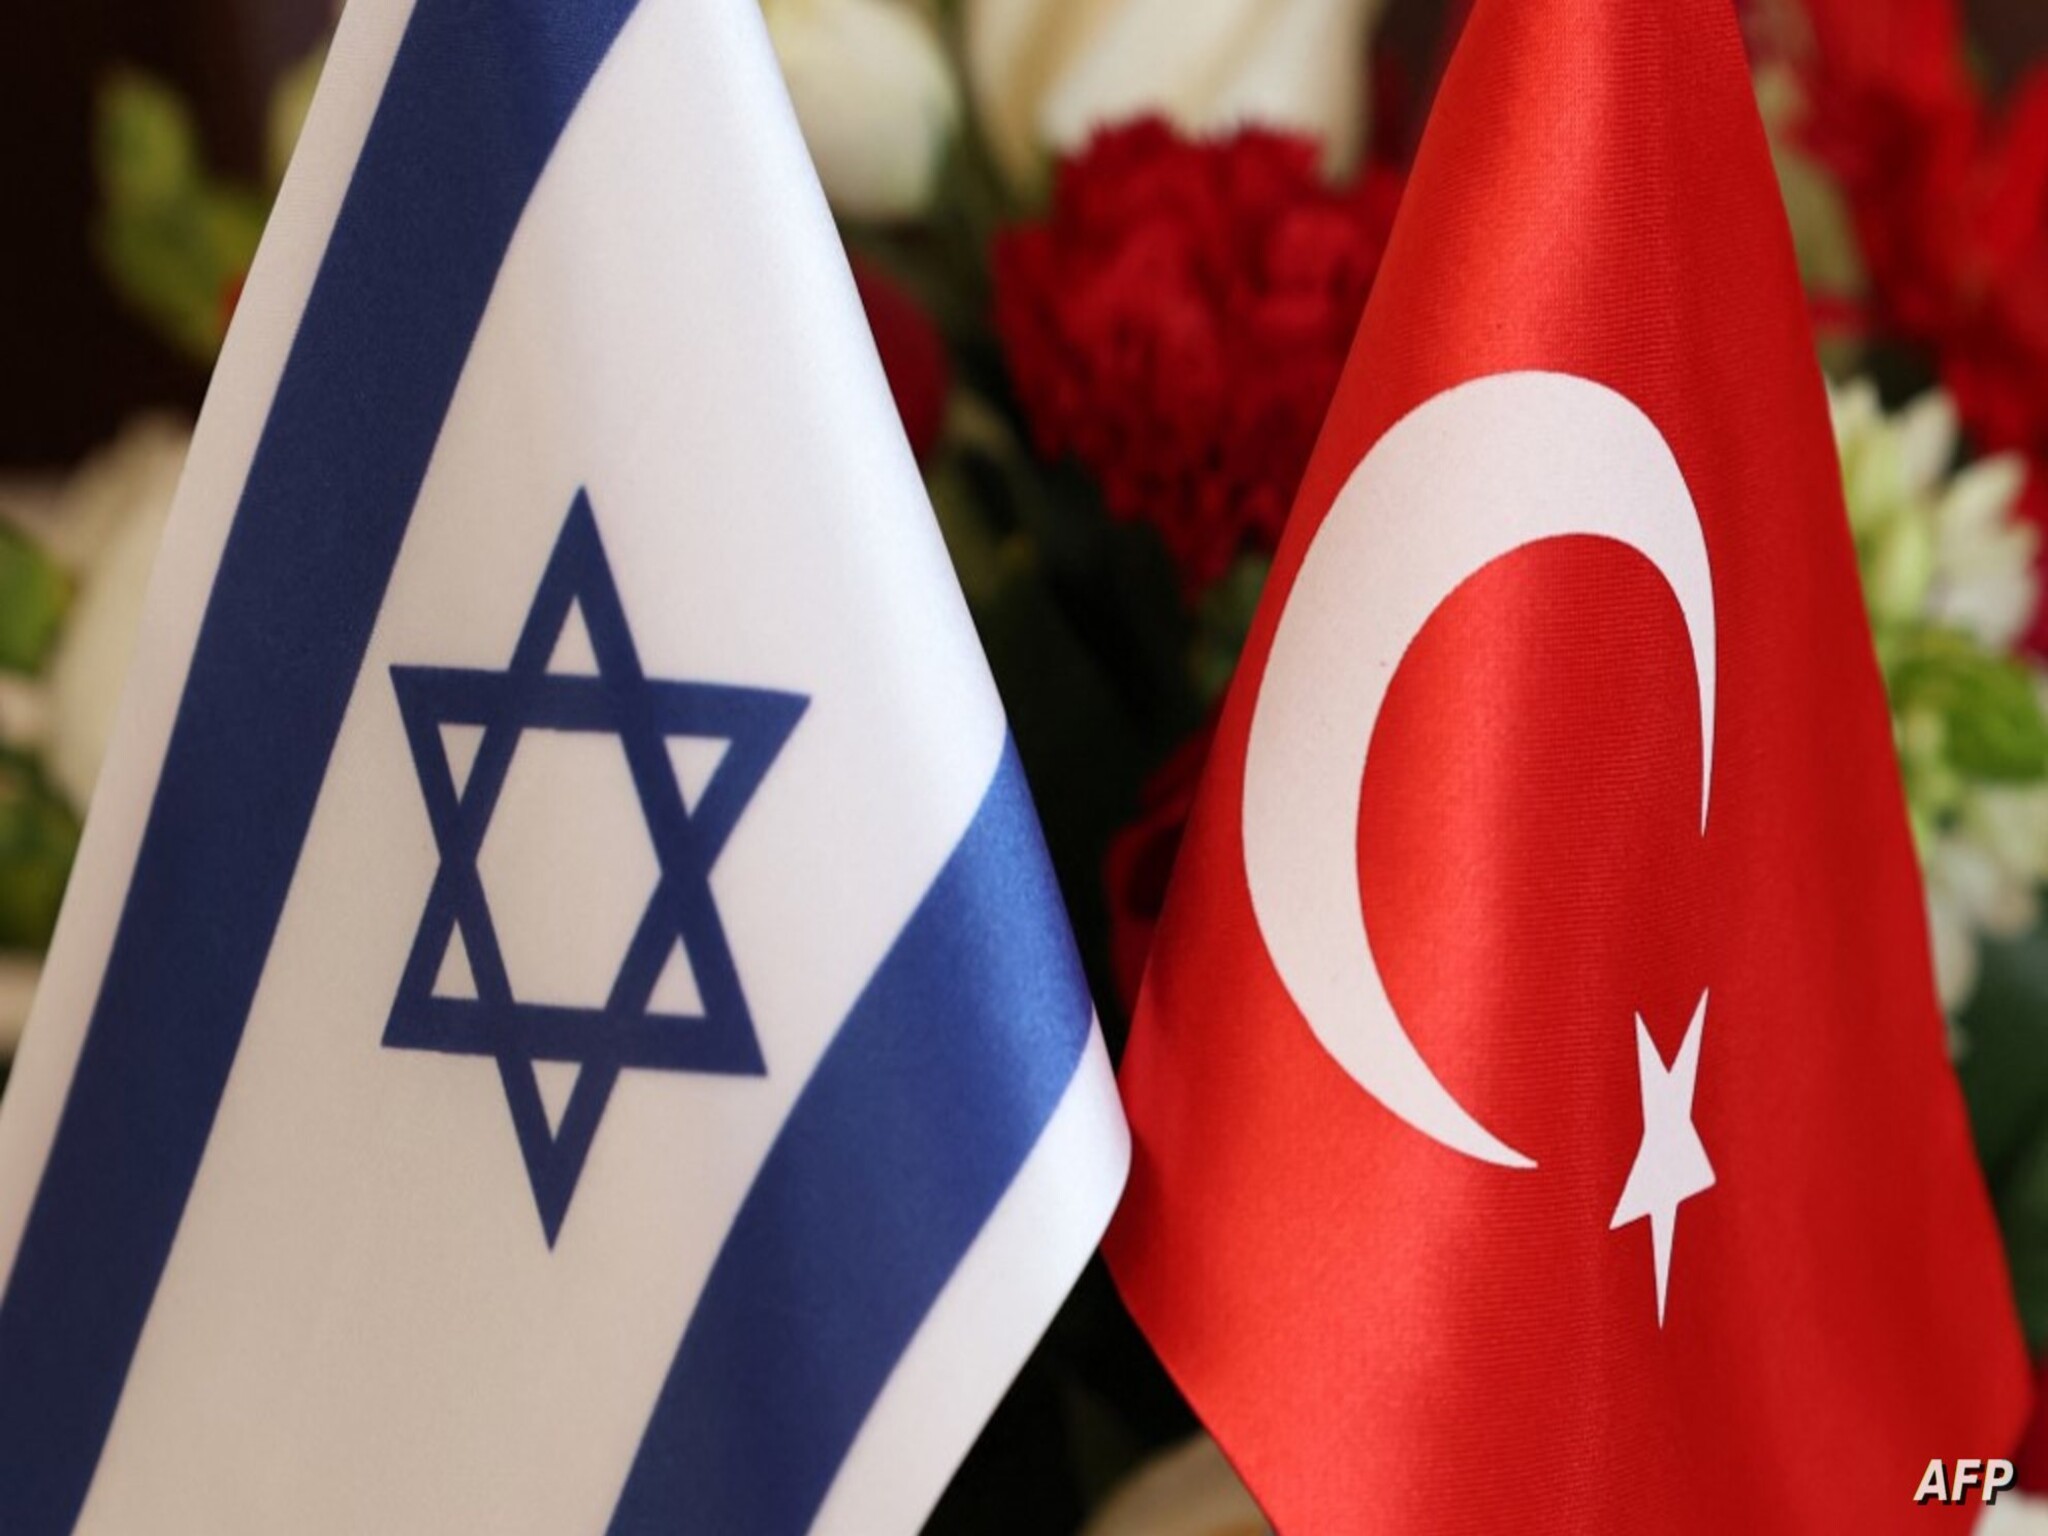 المصدرون الأتراك يبحثون عن "دولة ثالثة" لإرسال بضائعهم إلى إسرائيل